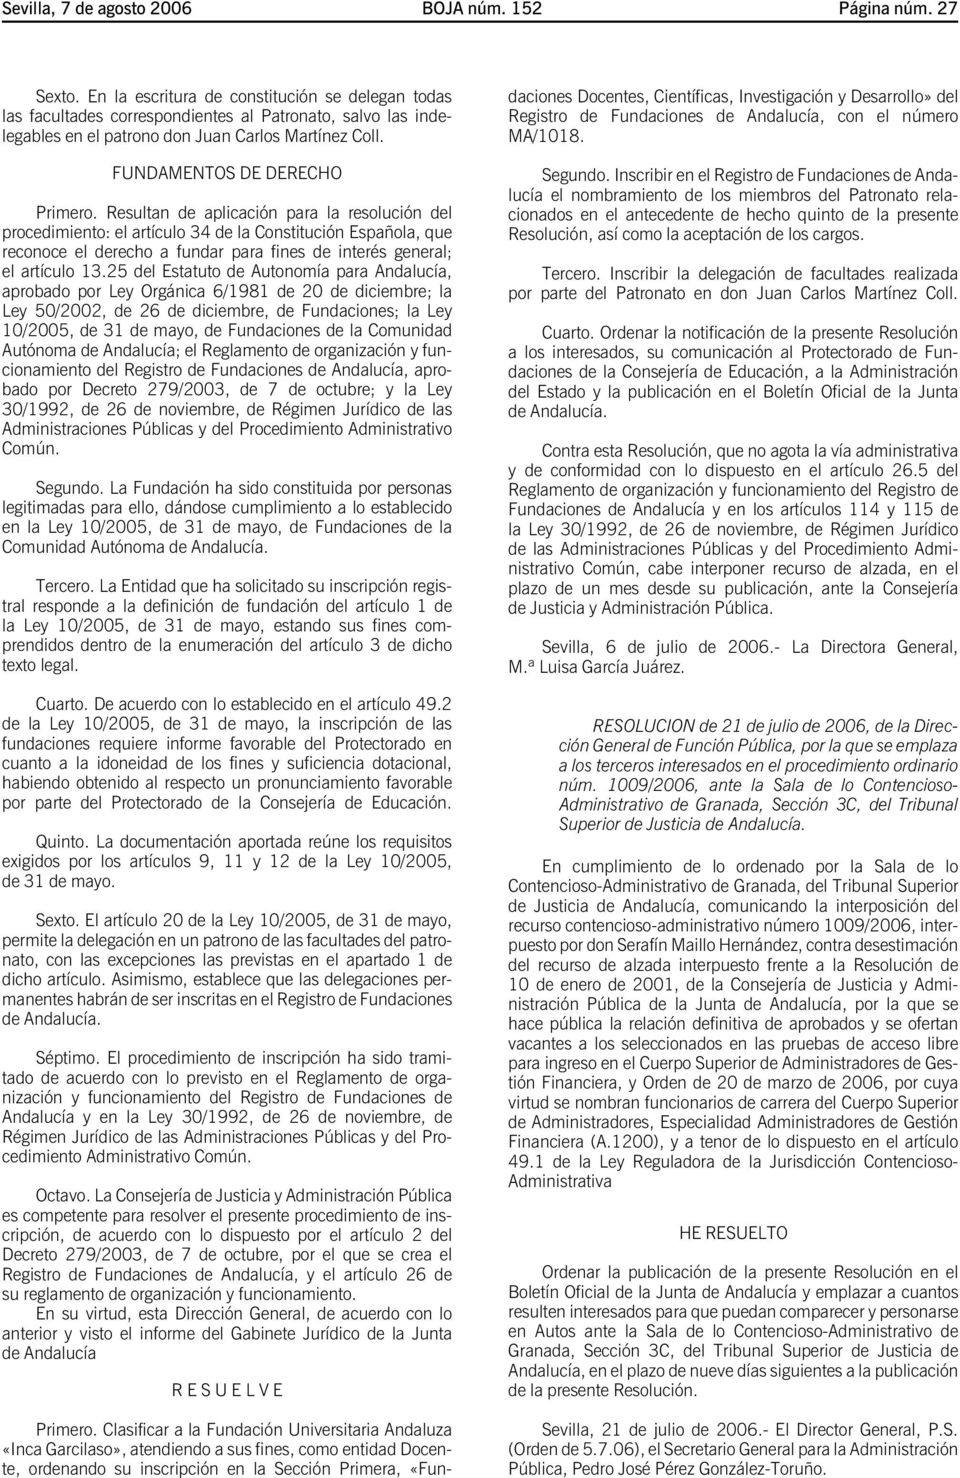 Resultan de aplicación para la resolución del procedimiento: el artículo 34 de la Constitución Española, que reconoce el derecho a fundar para fines de interés general; el artículo 13.